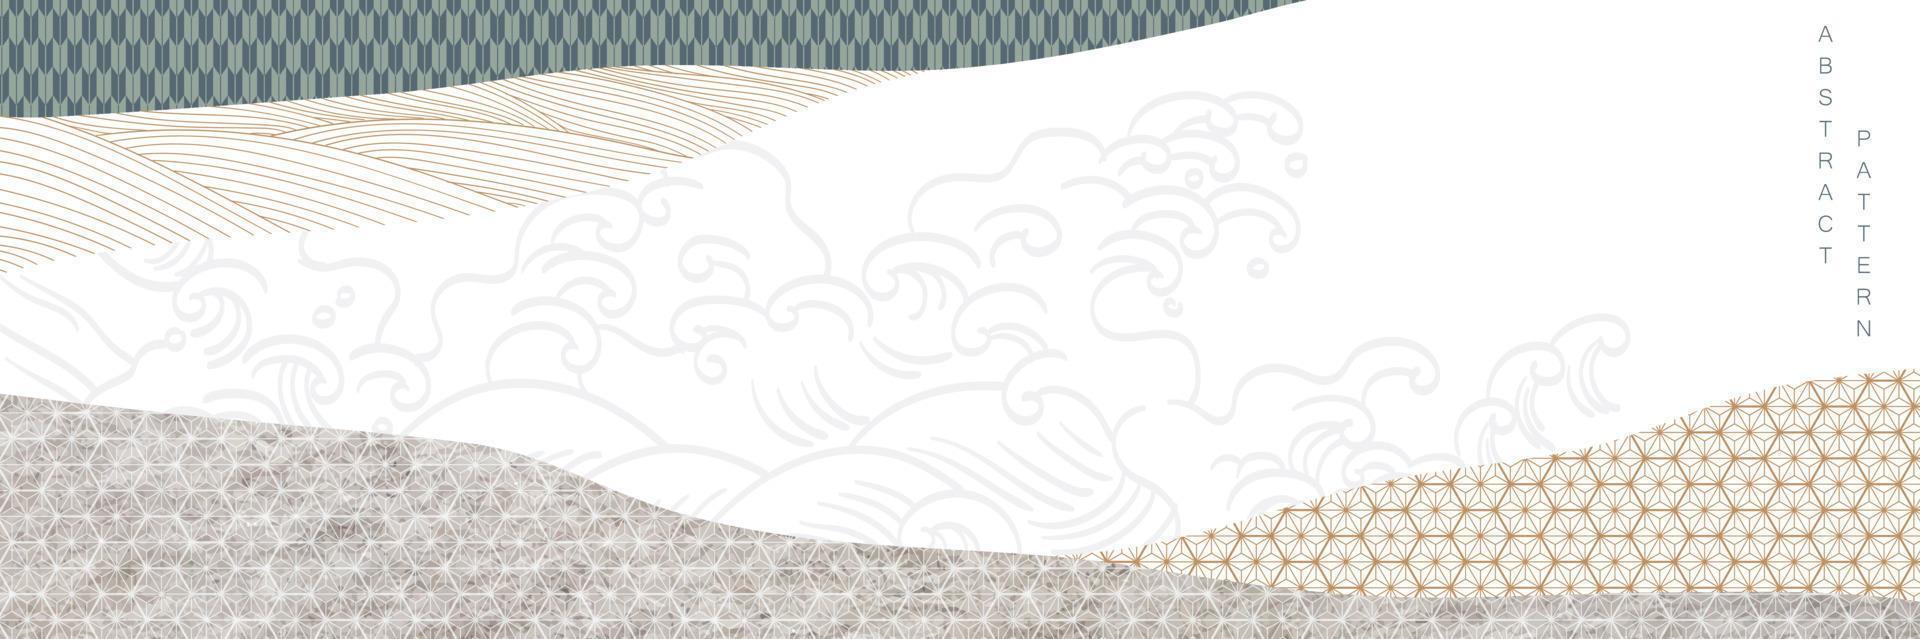 abstrait blanc et gris. géométrique avec décoration vague dessinée à la main. bannière twitter de vecteur japonais. conception de modèle de présentation, affiche, couverture de cd, dépliant, arrière-plans de site Web, publicité.